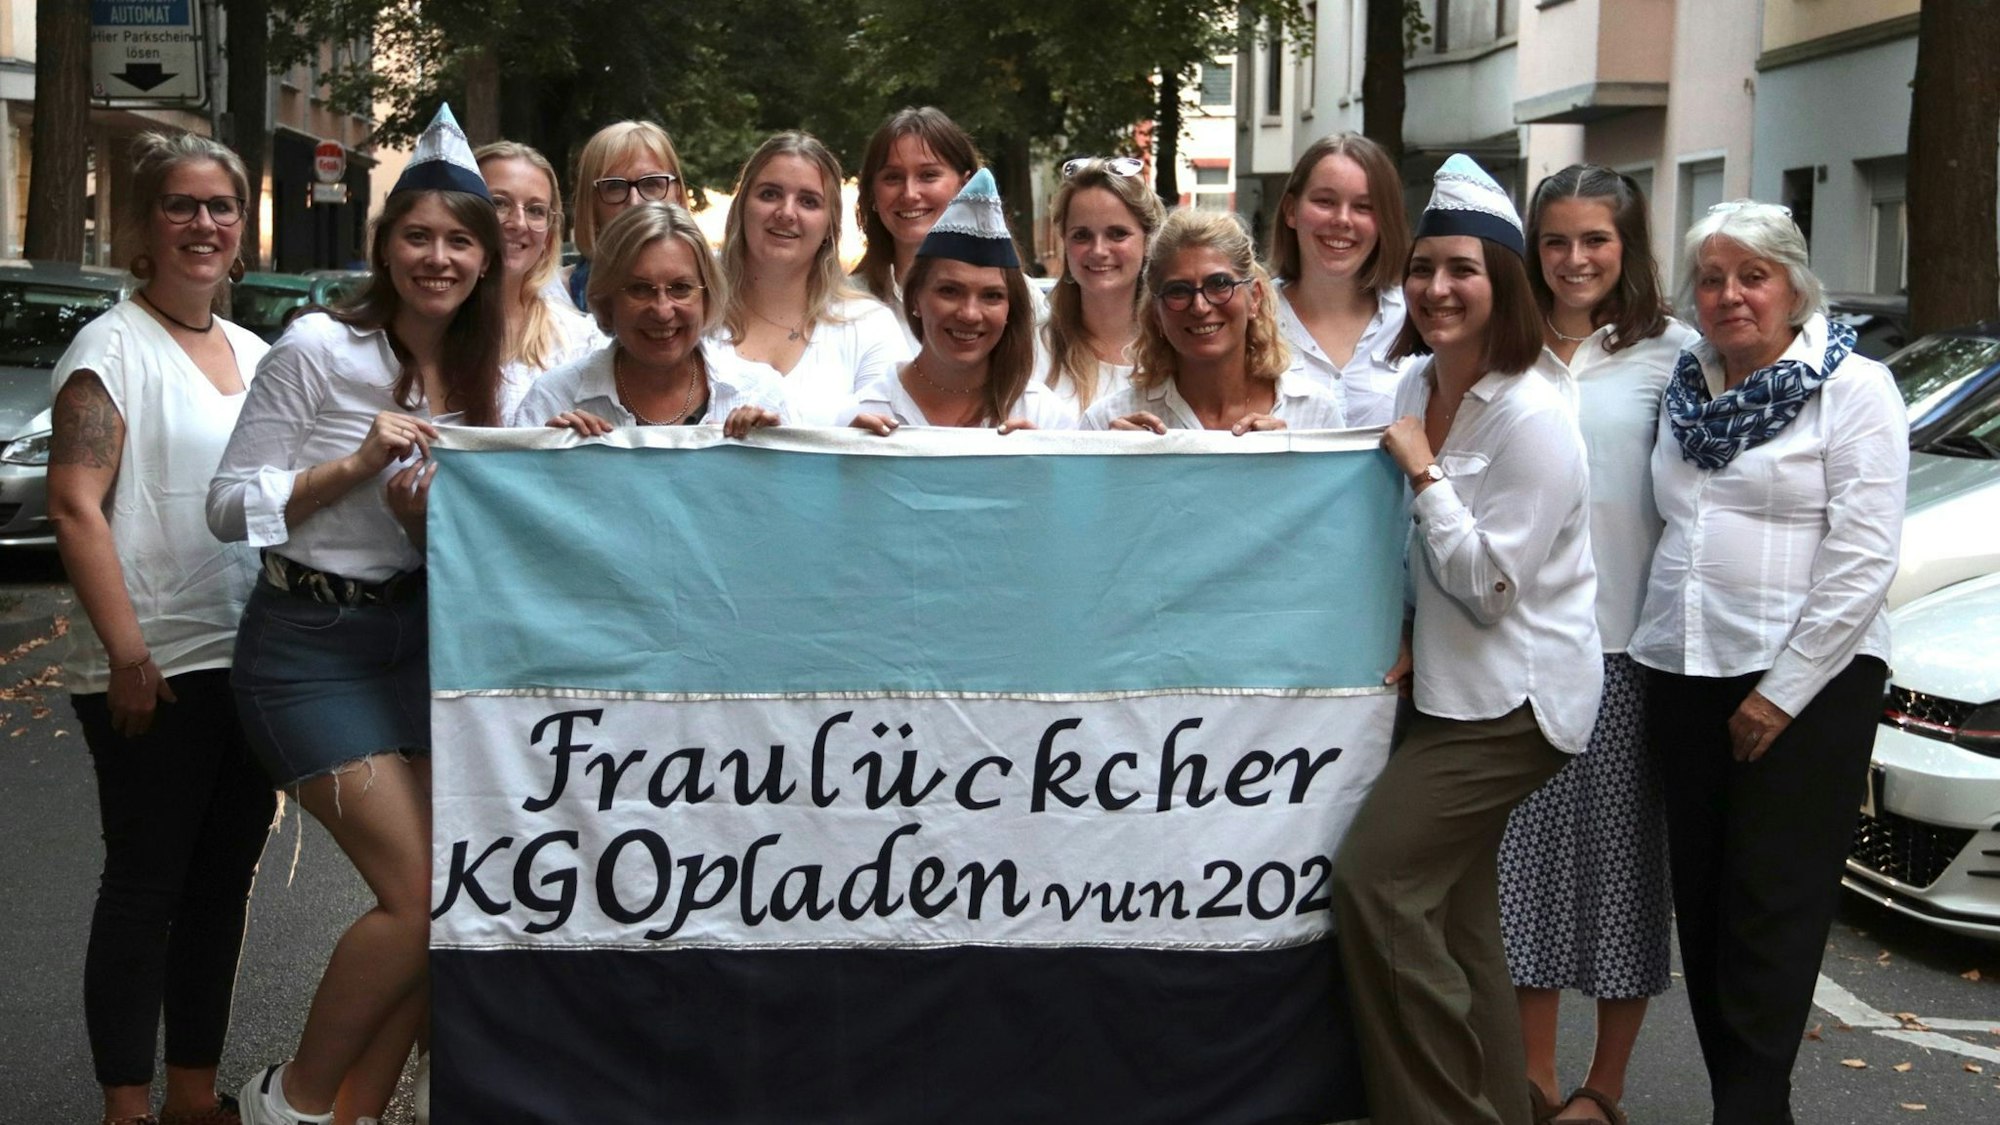 Die Fraulückcher aus Opladen sind der erste rein weibliche Karnevalsverein in Leverkusen.